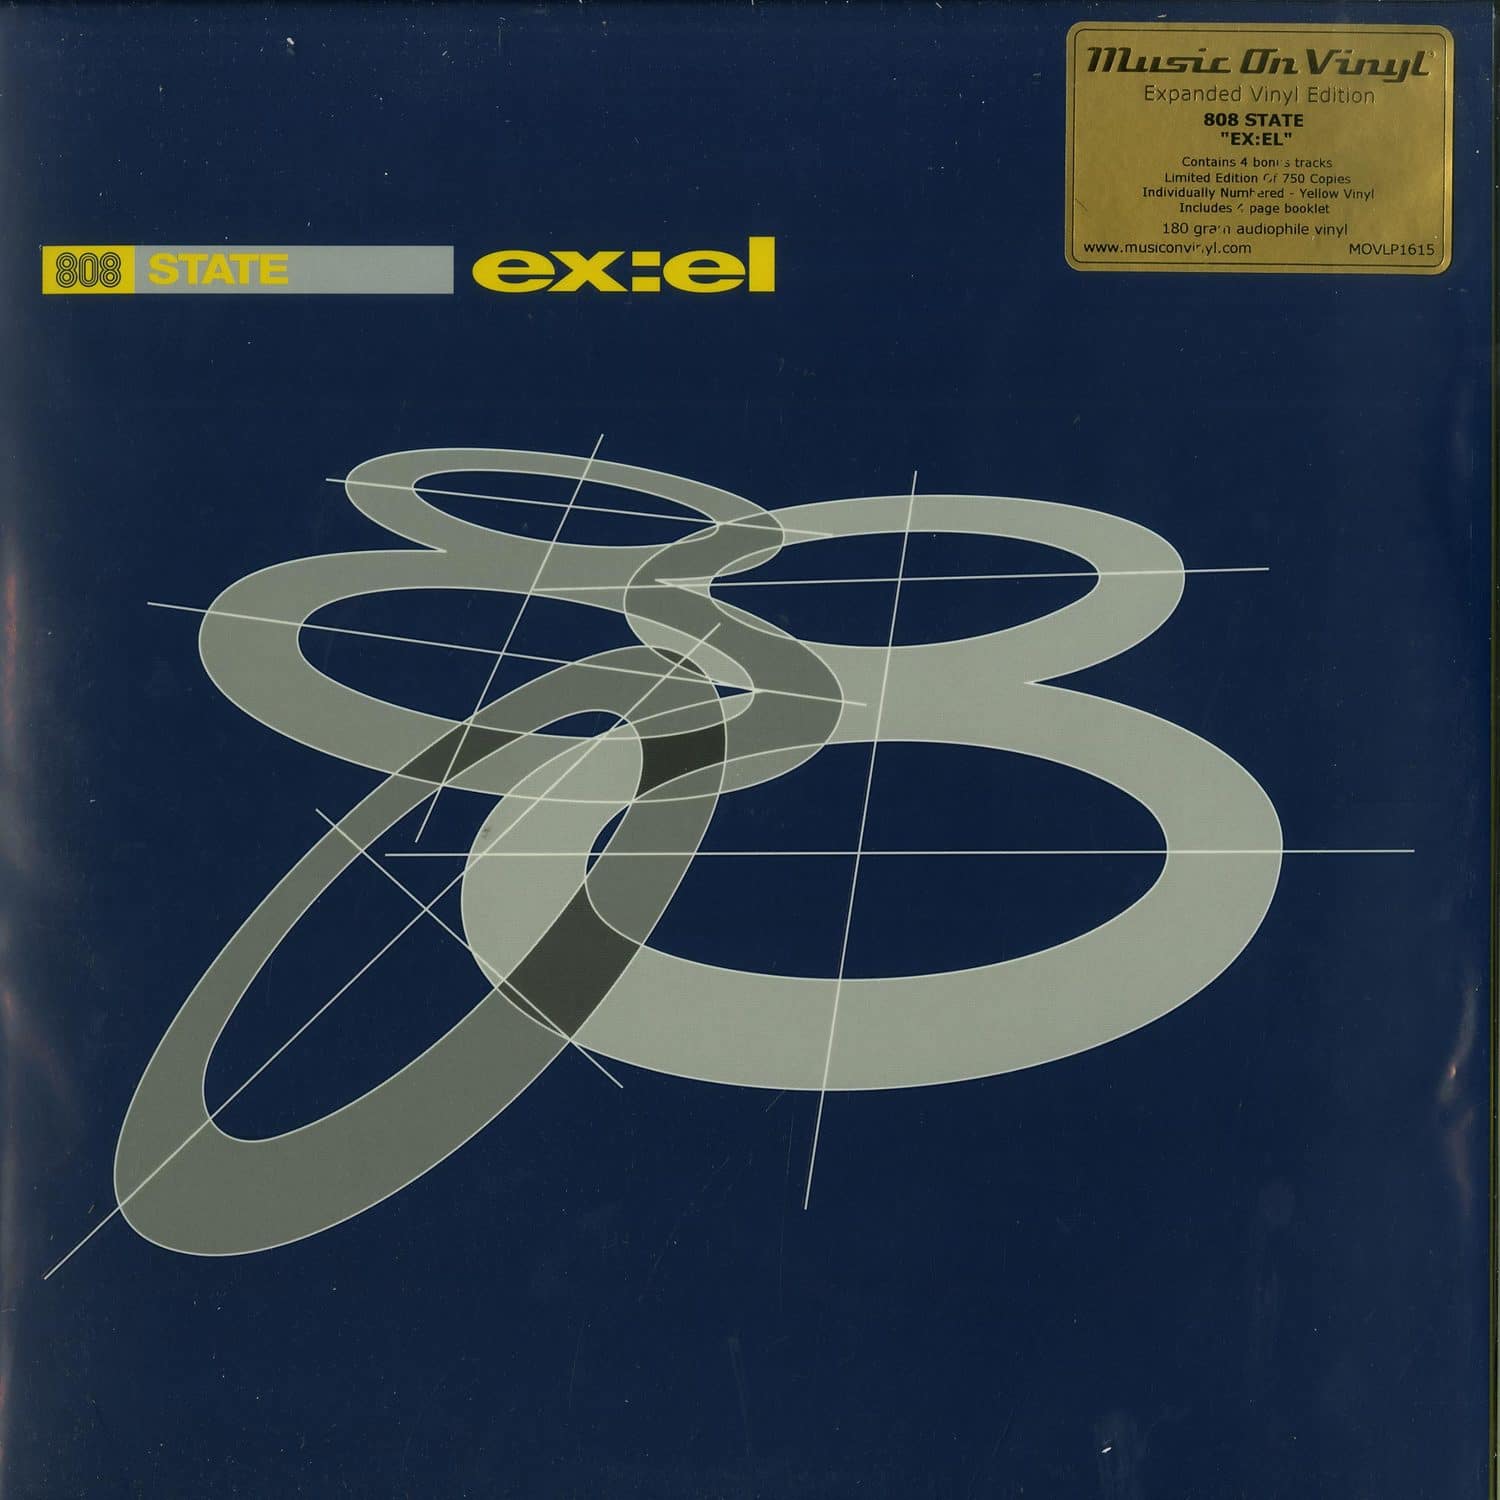 808 State - EX:EL 